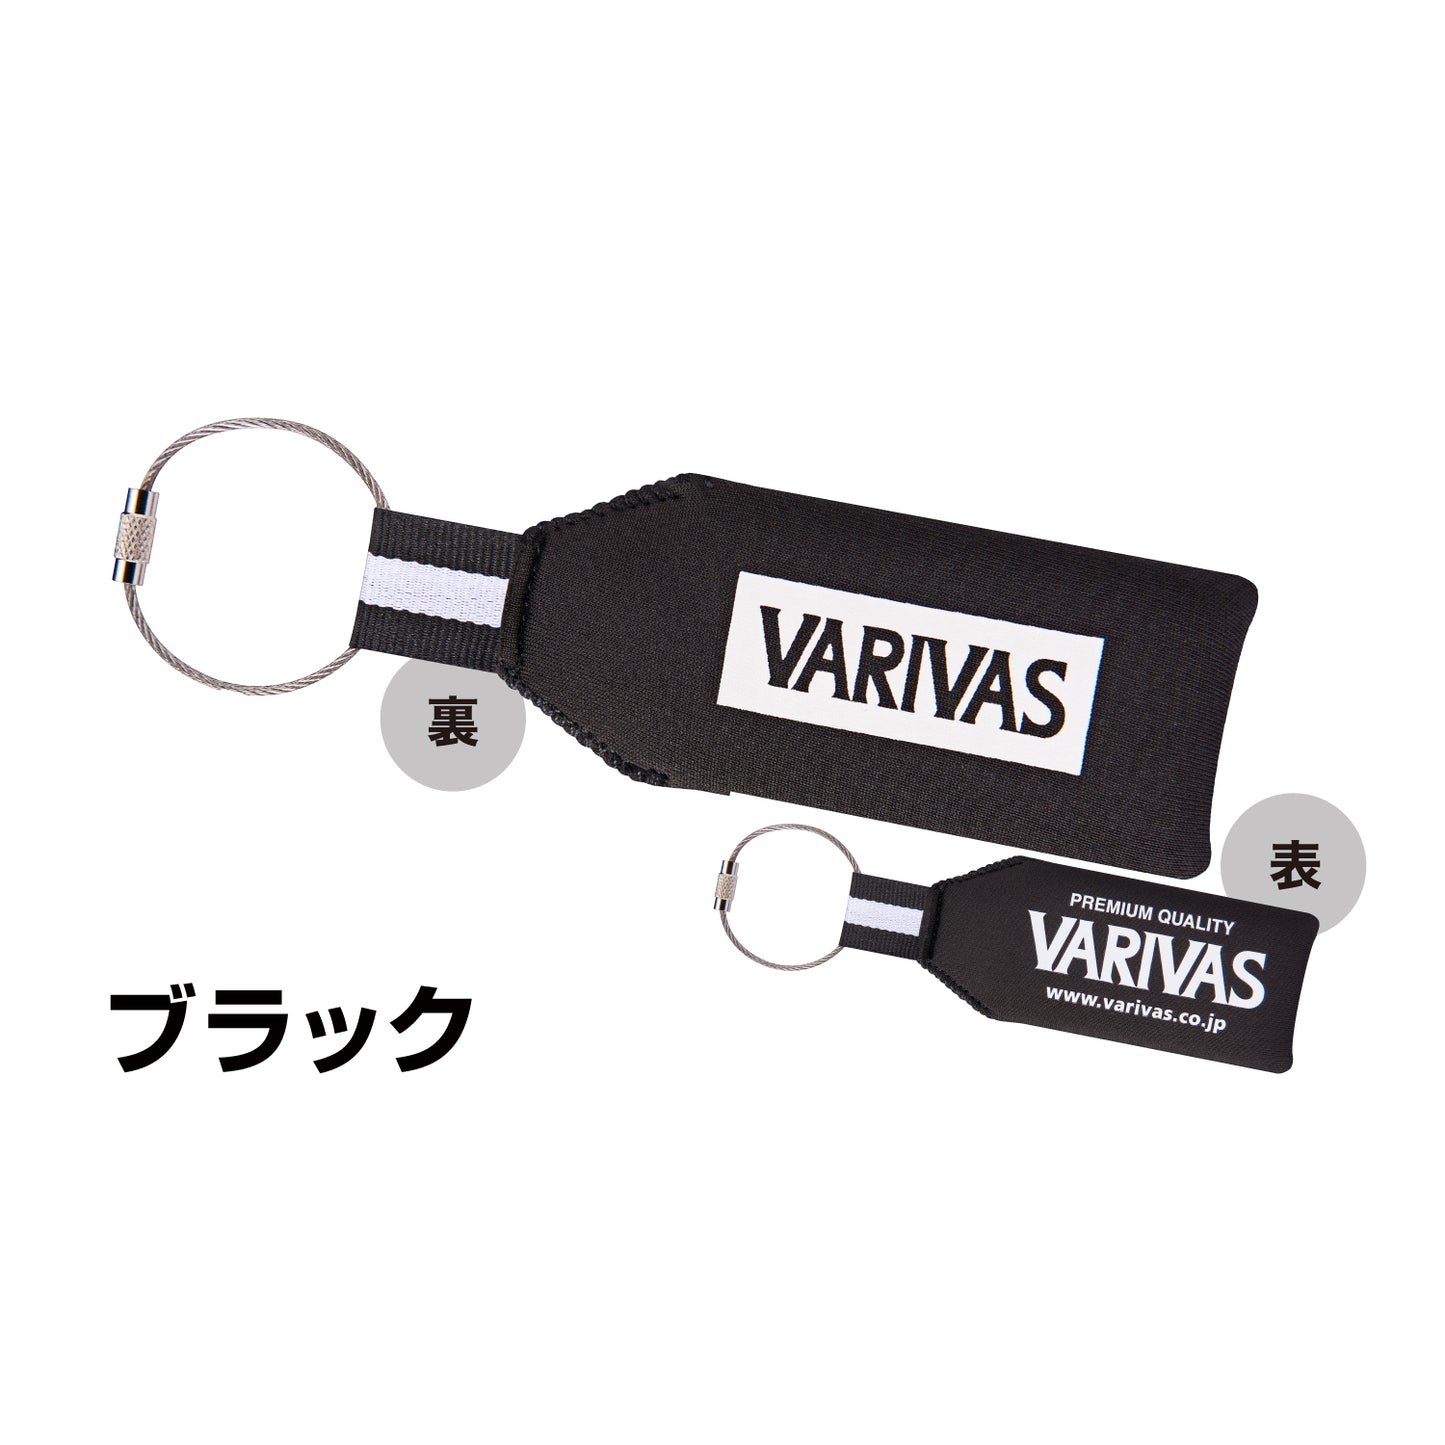 Terapung Kunci VAAC-62